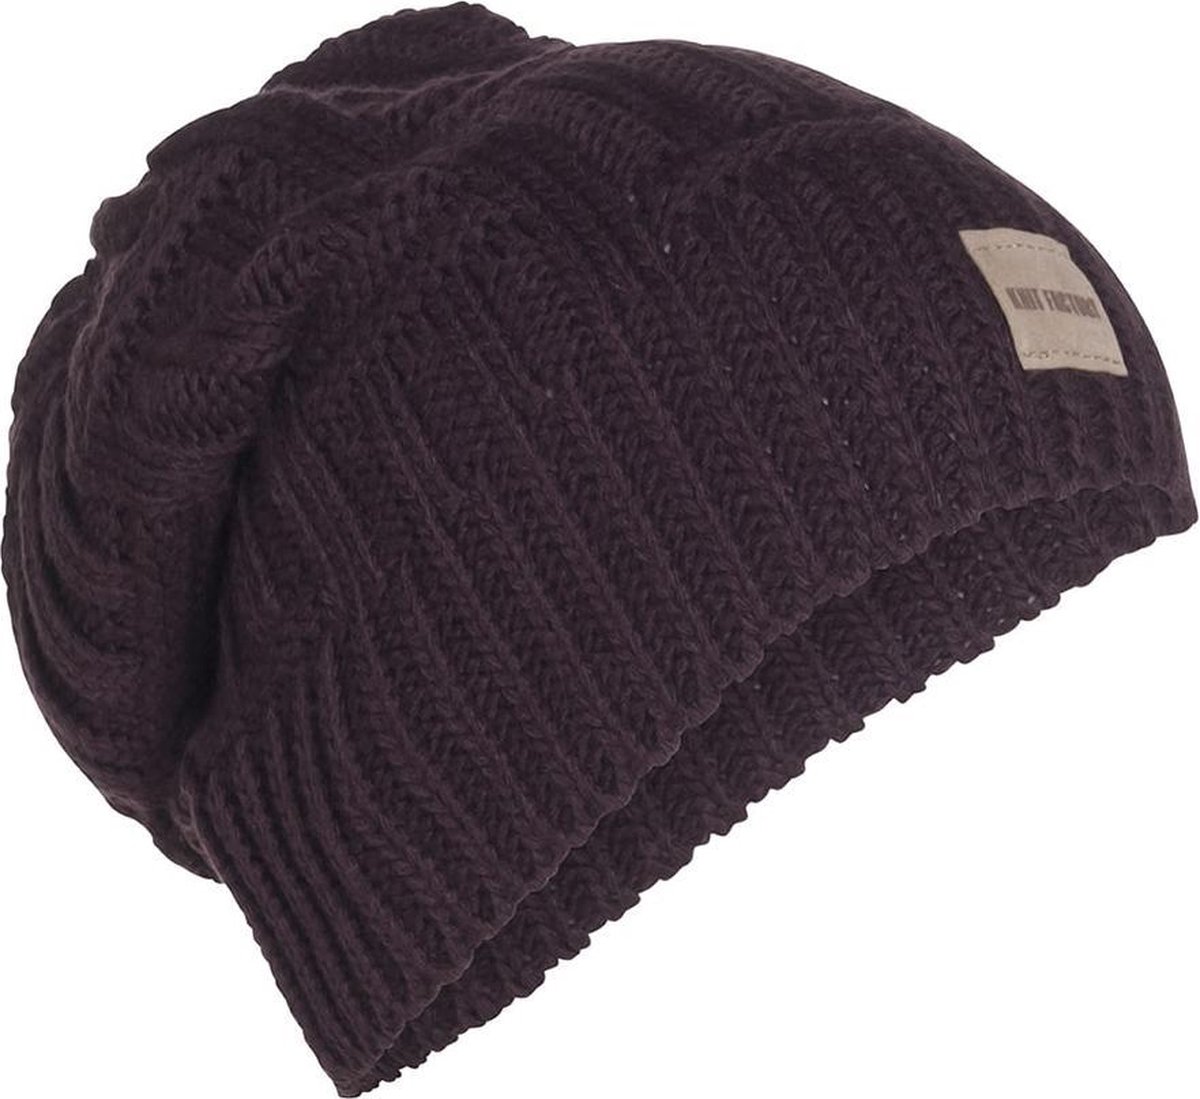 Knit Factory Bobby Gebreide Muts Heren & Dames - Sloppy Beanie hat - Aubergine - Warme paarse Wintermuts - Unisex - One Size